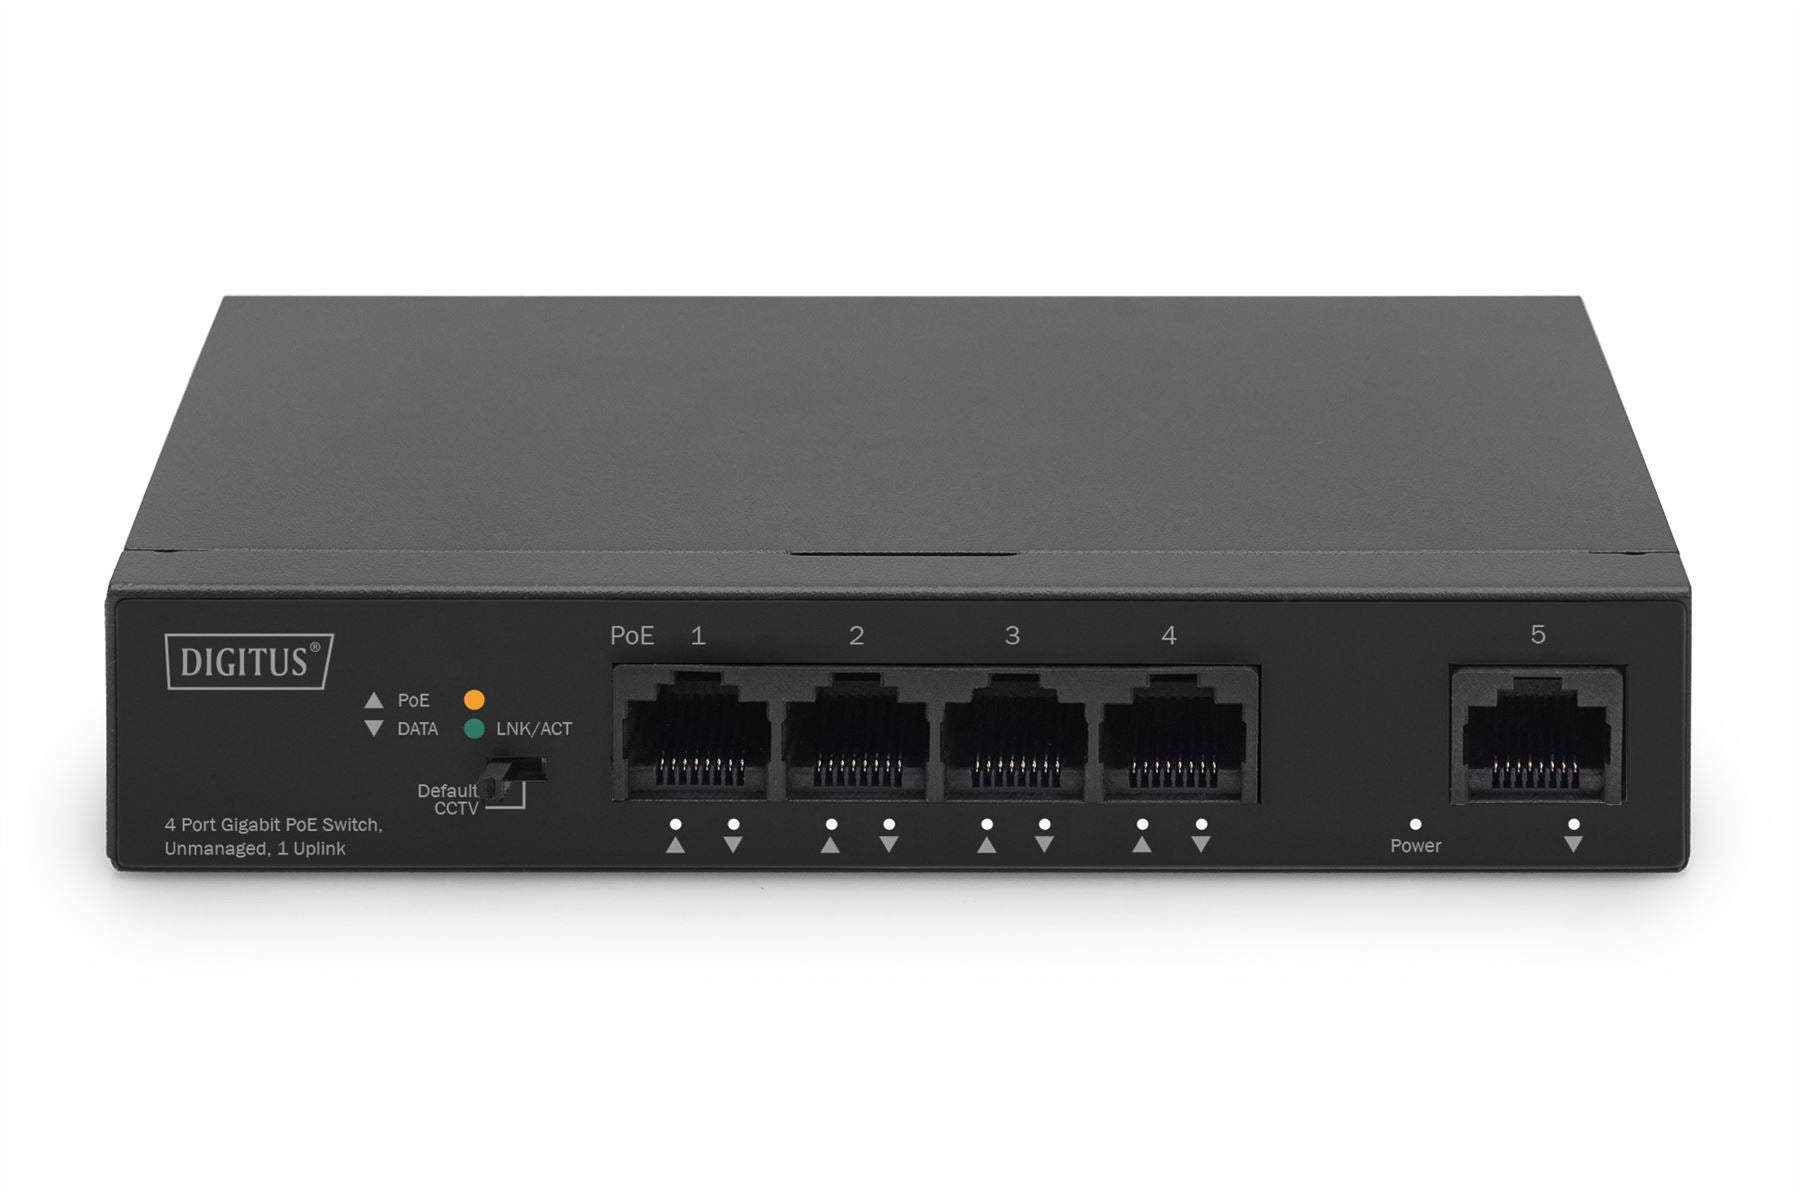 Digitus 4 Port Gigabit PoE Switch DN-95330-1 10/100/1000 Mbps (RJ-45), Unmanaged, Desktop, Ethernet LAN (RJ-45) ports 4